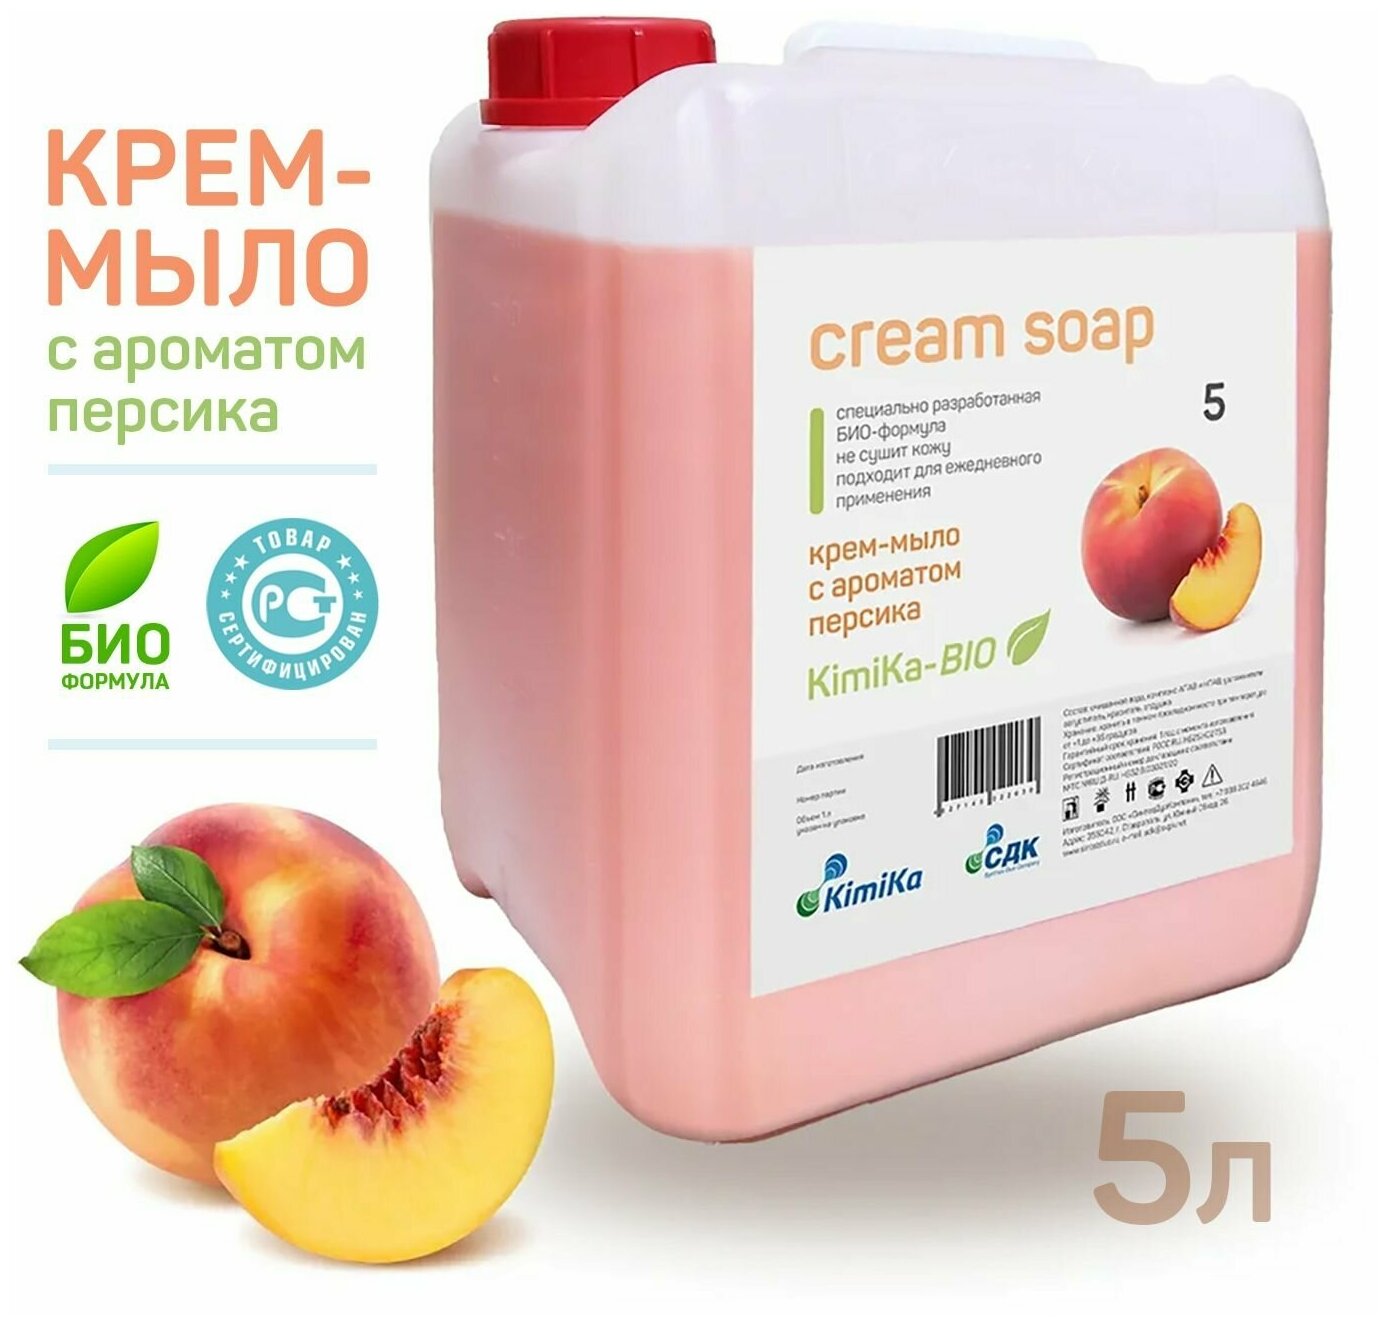 Жидкое крем-мыло для рук 5 л (литров) тела гипоаллергенное увлажняющее KimiKa-БИО аромат Персик большой объем детское